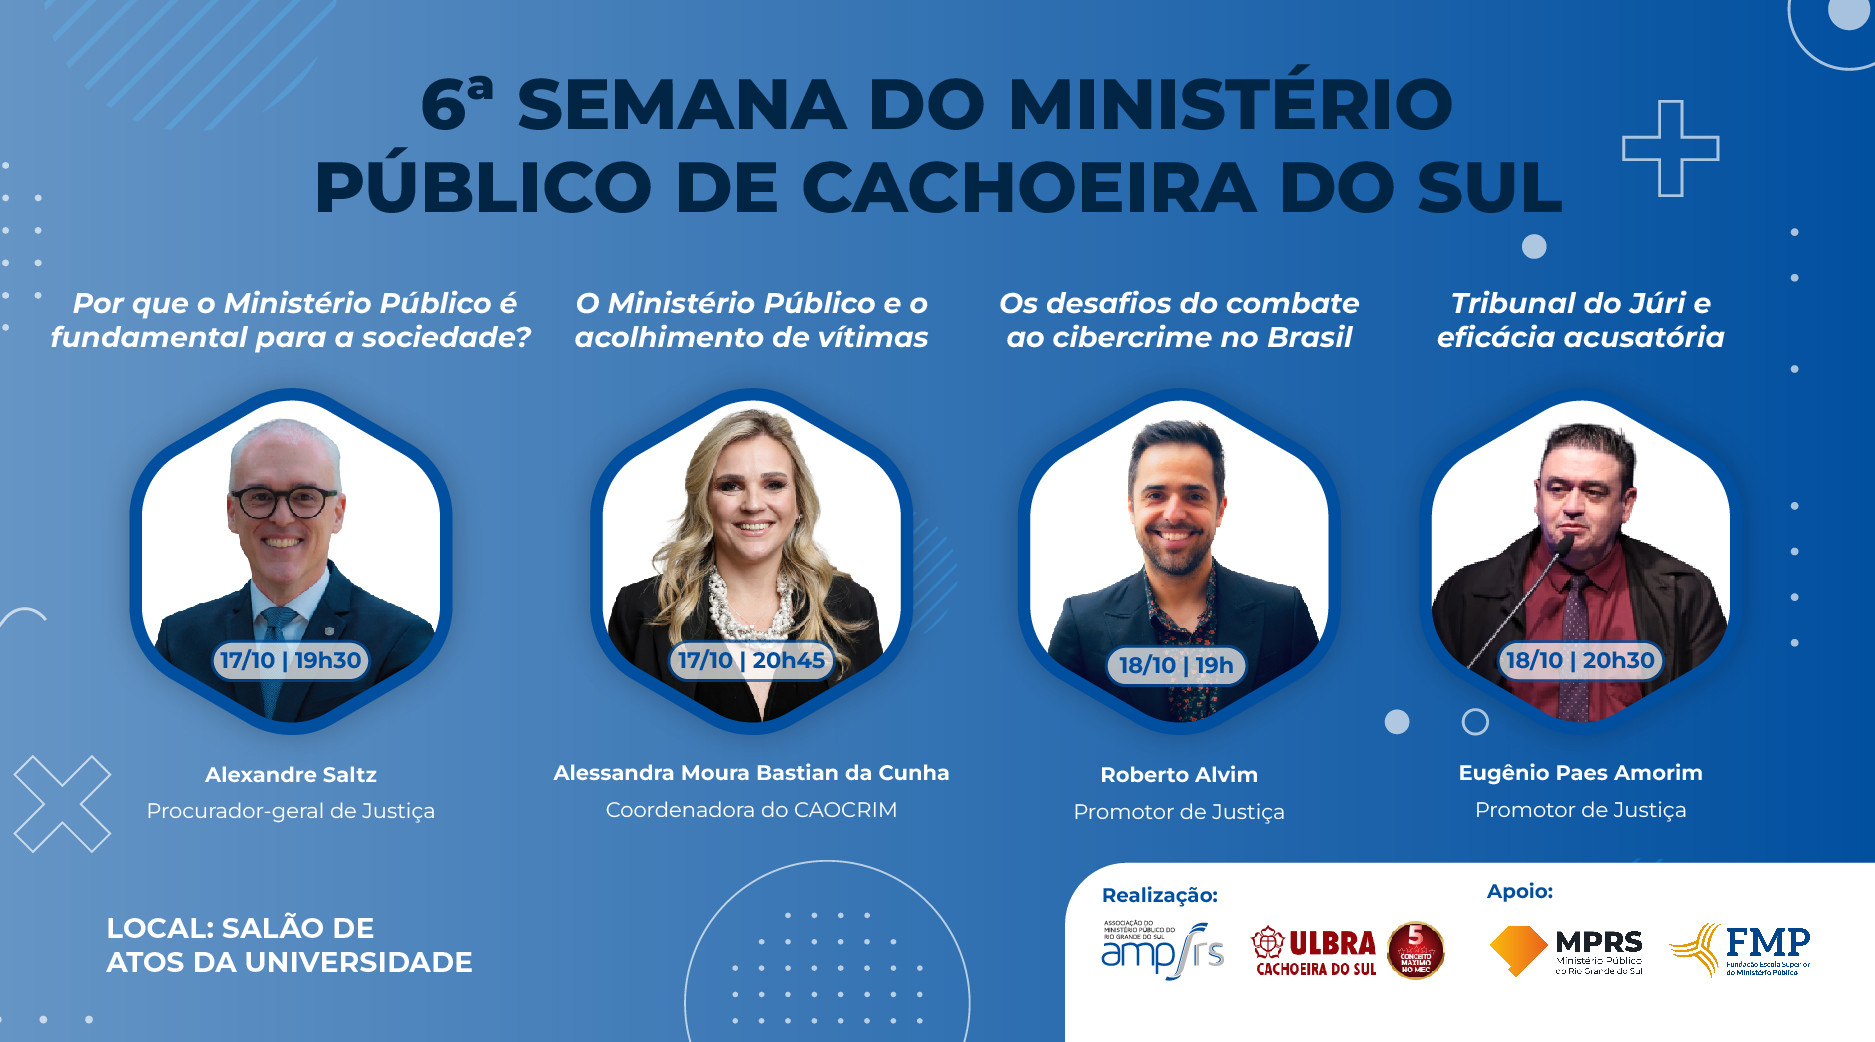 34820C-VI Semana do Ministério Público de Cachoeira do Sul-banner-900x500px_Prancheta 1